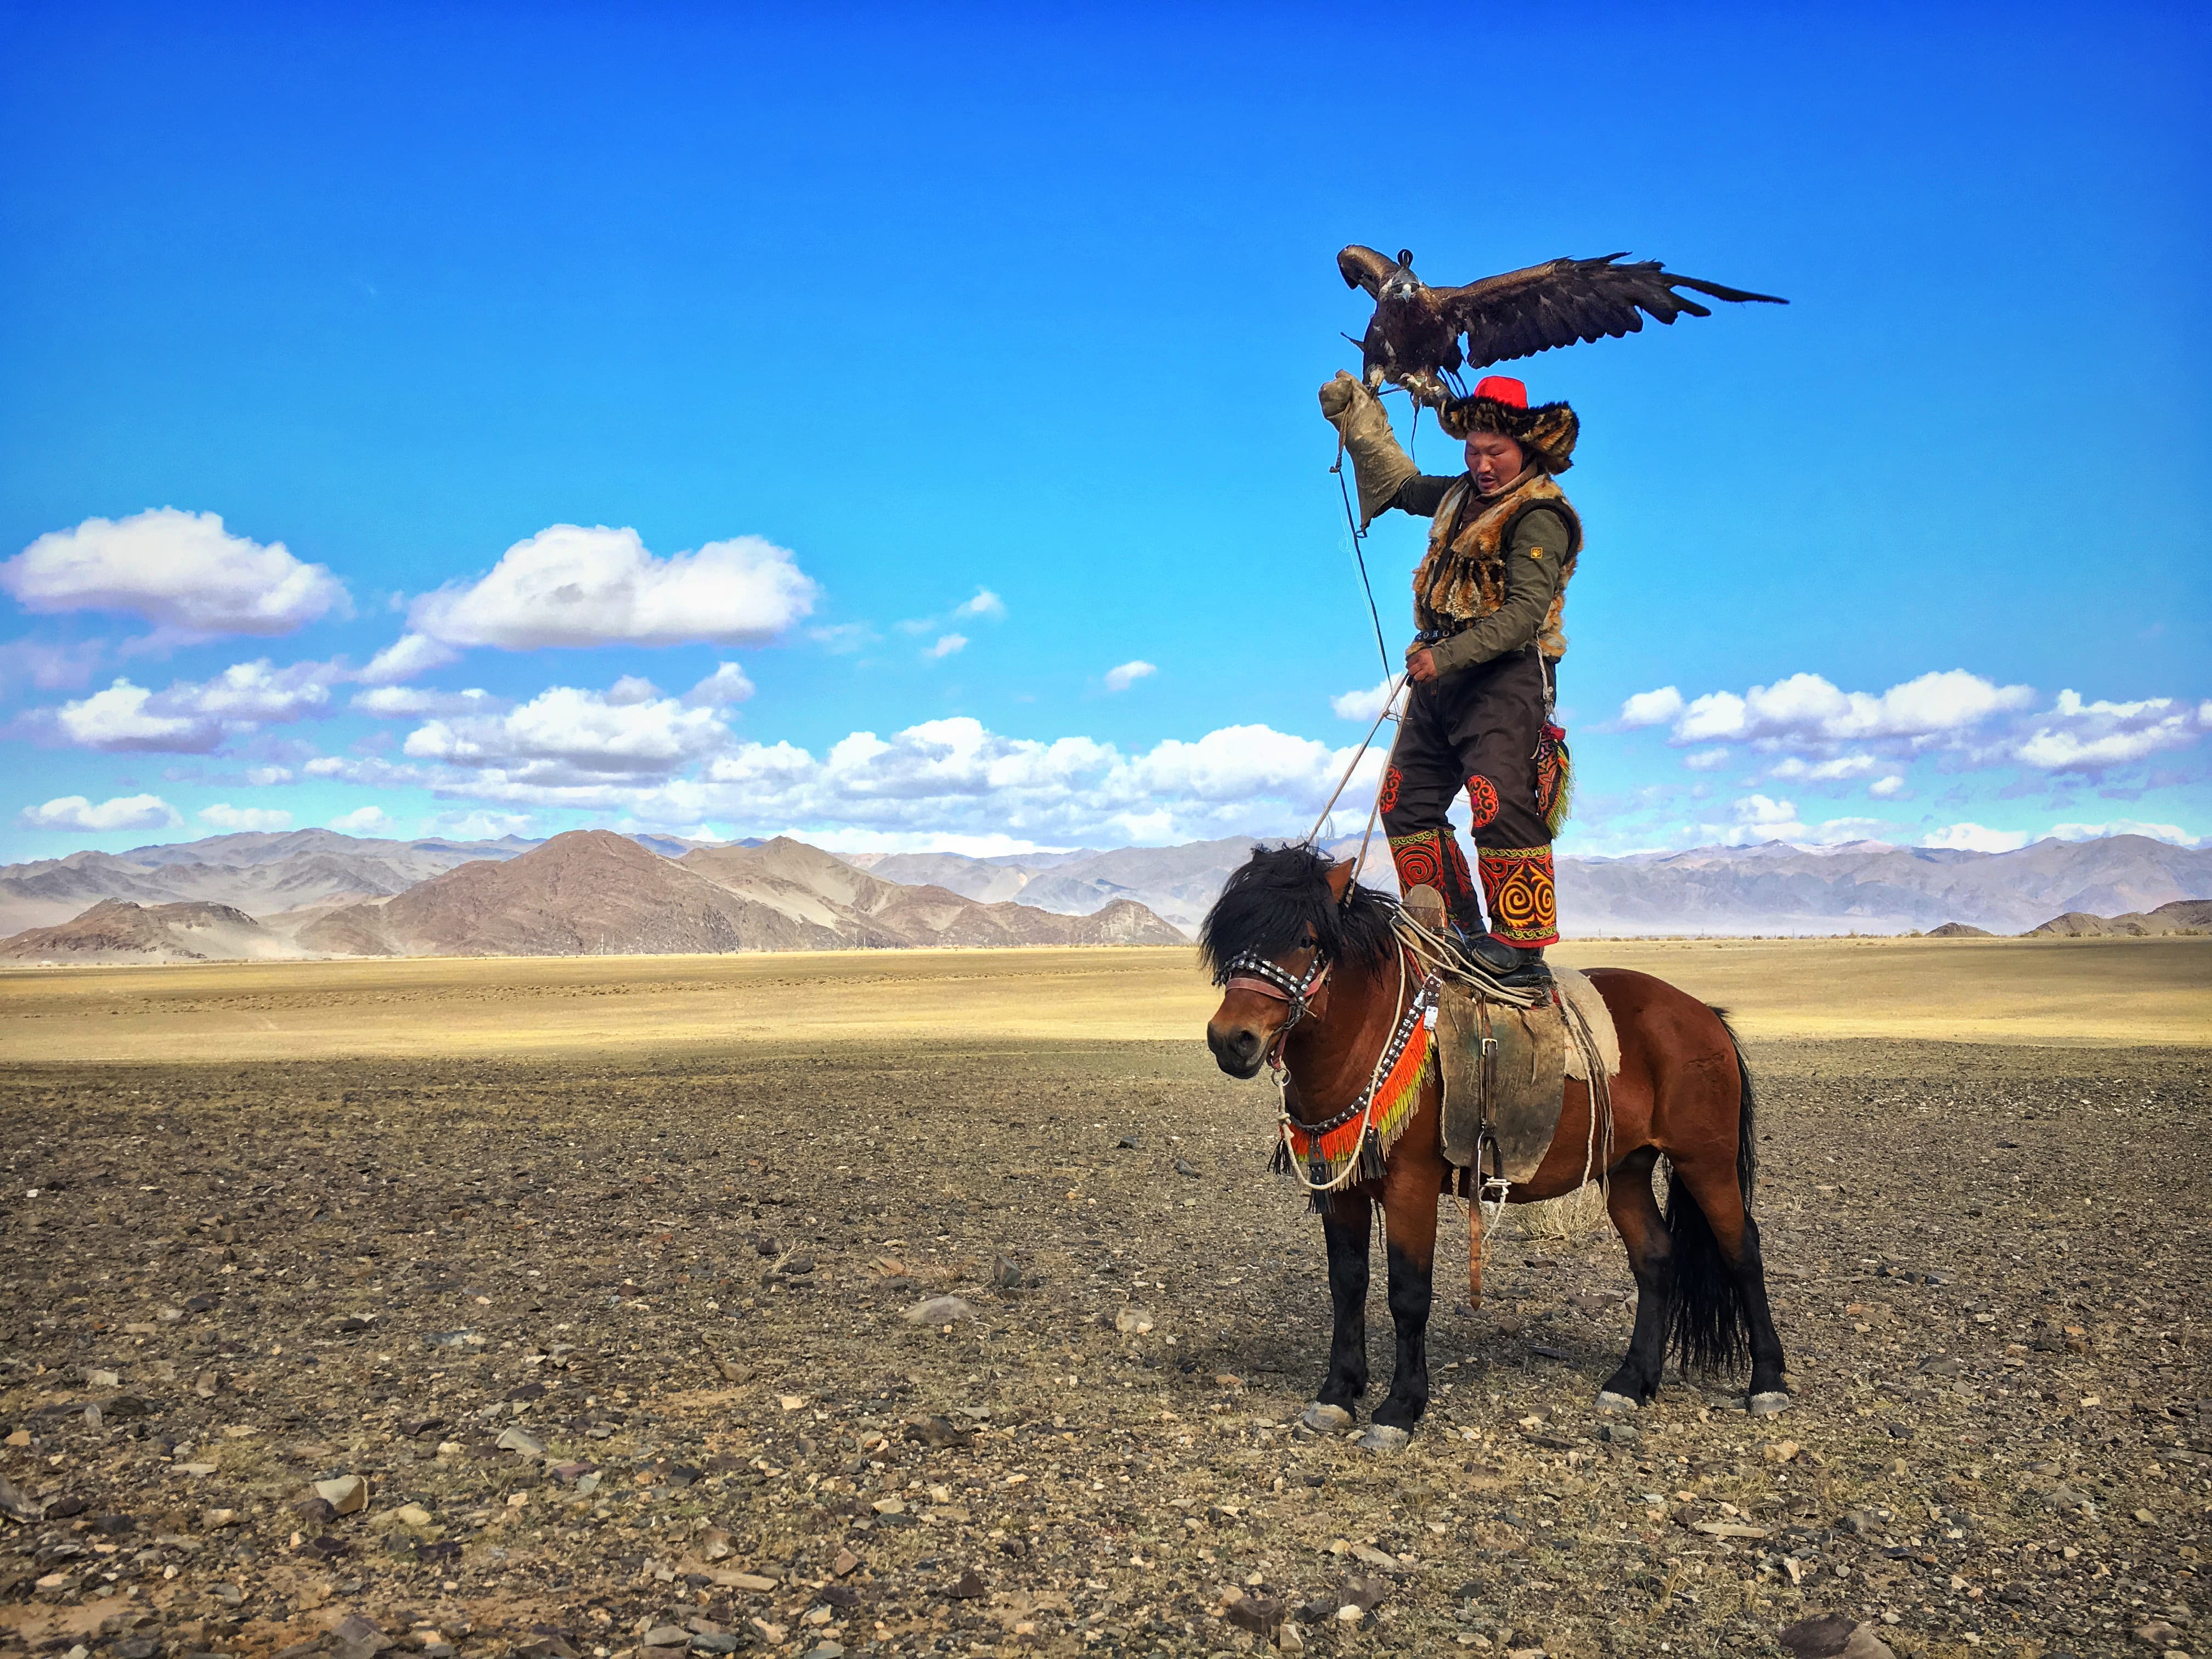 SCOTT A WOODWARD - Mongolia